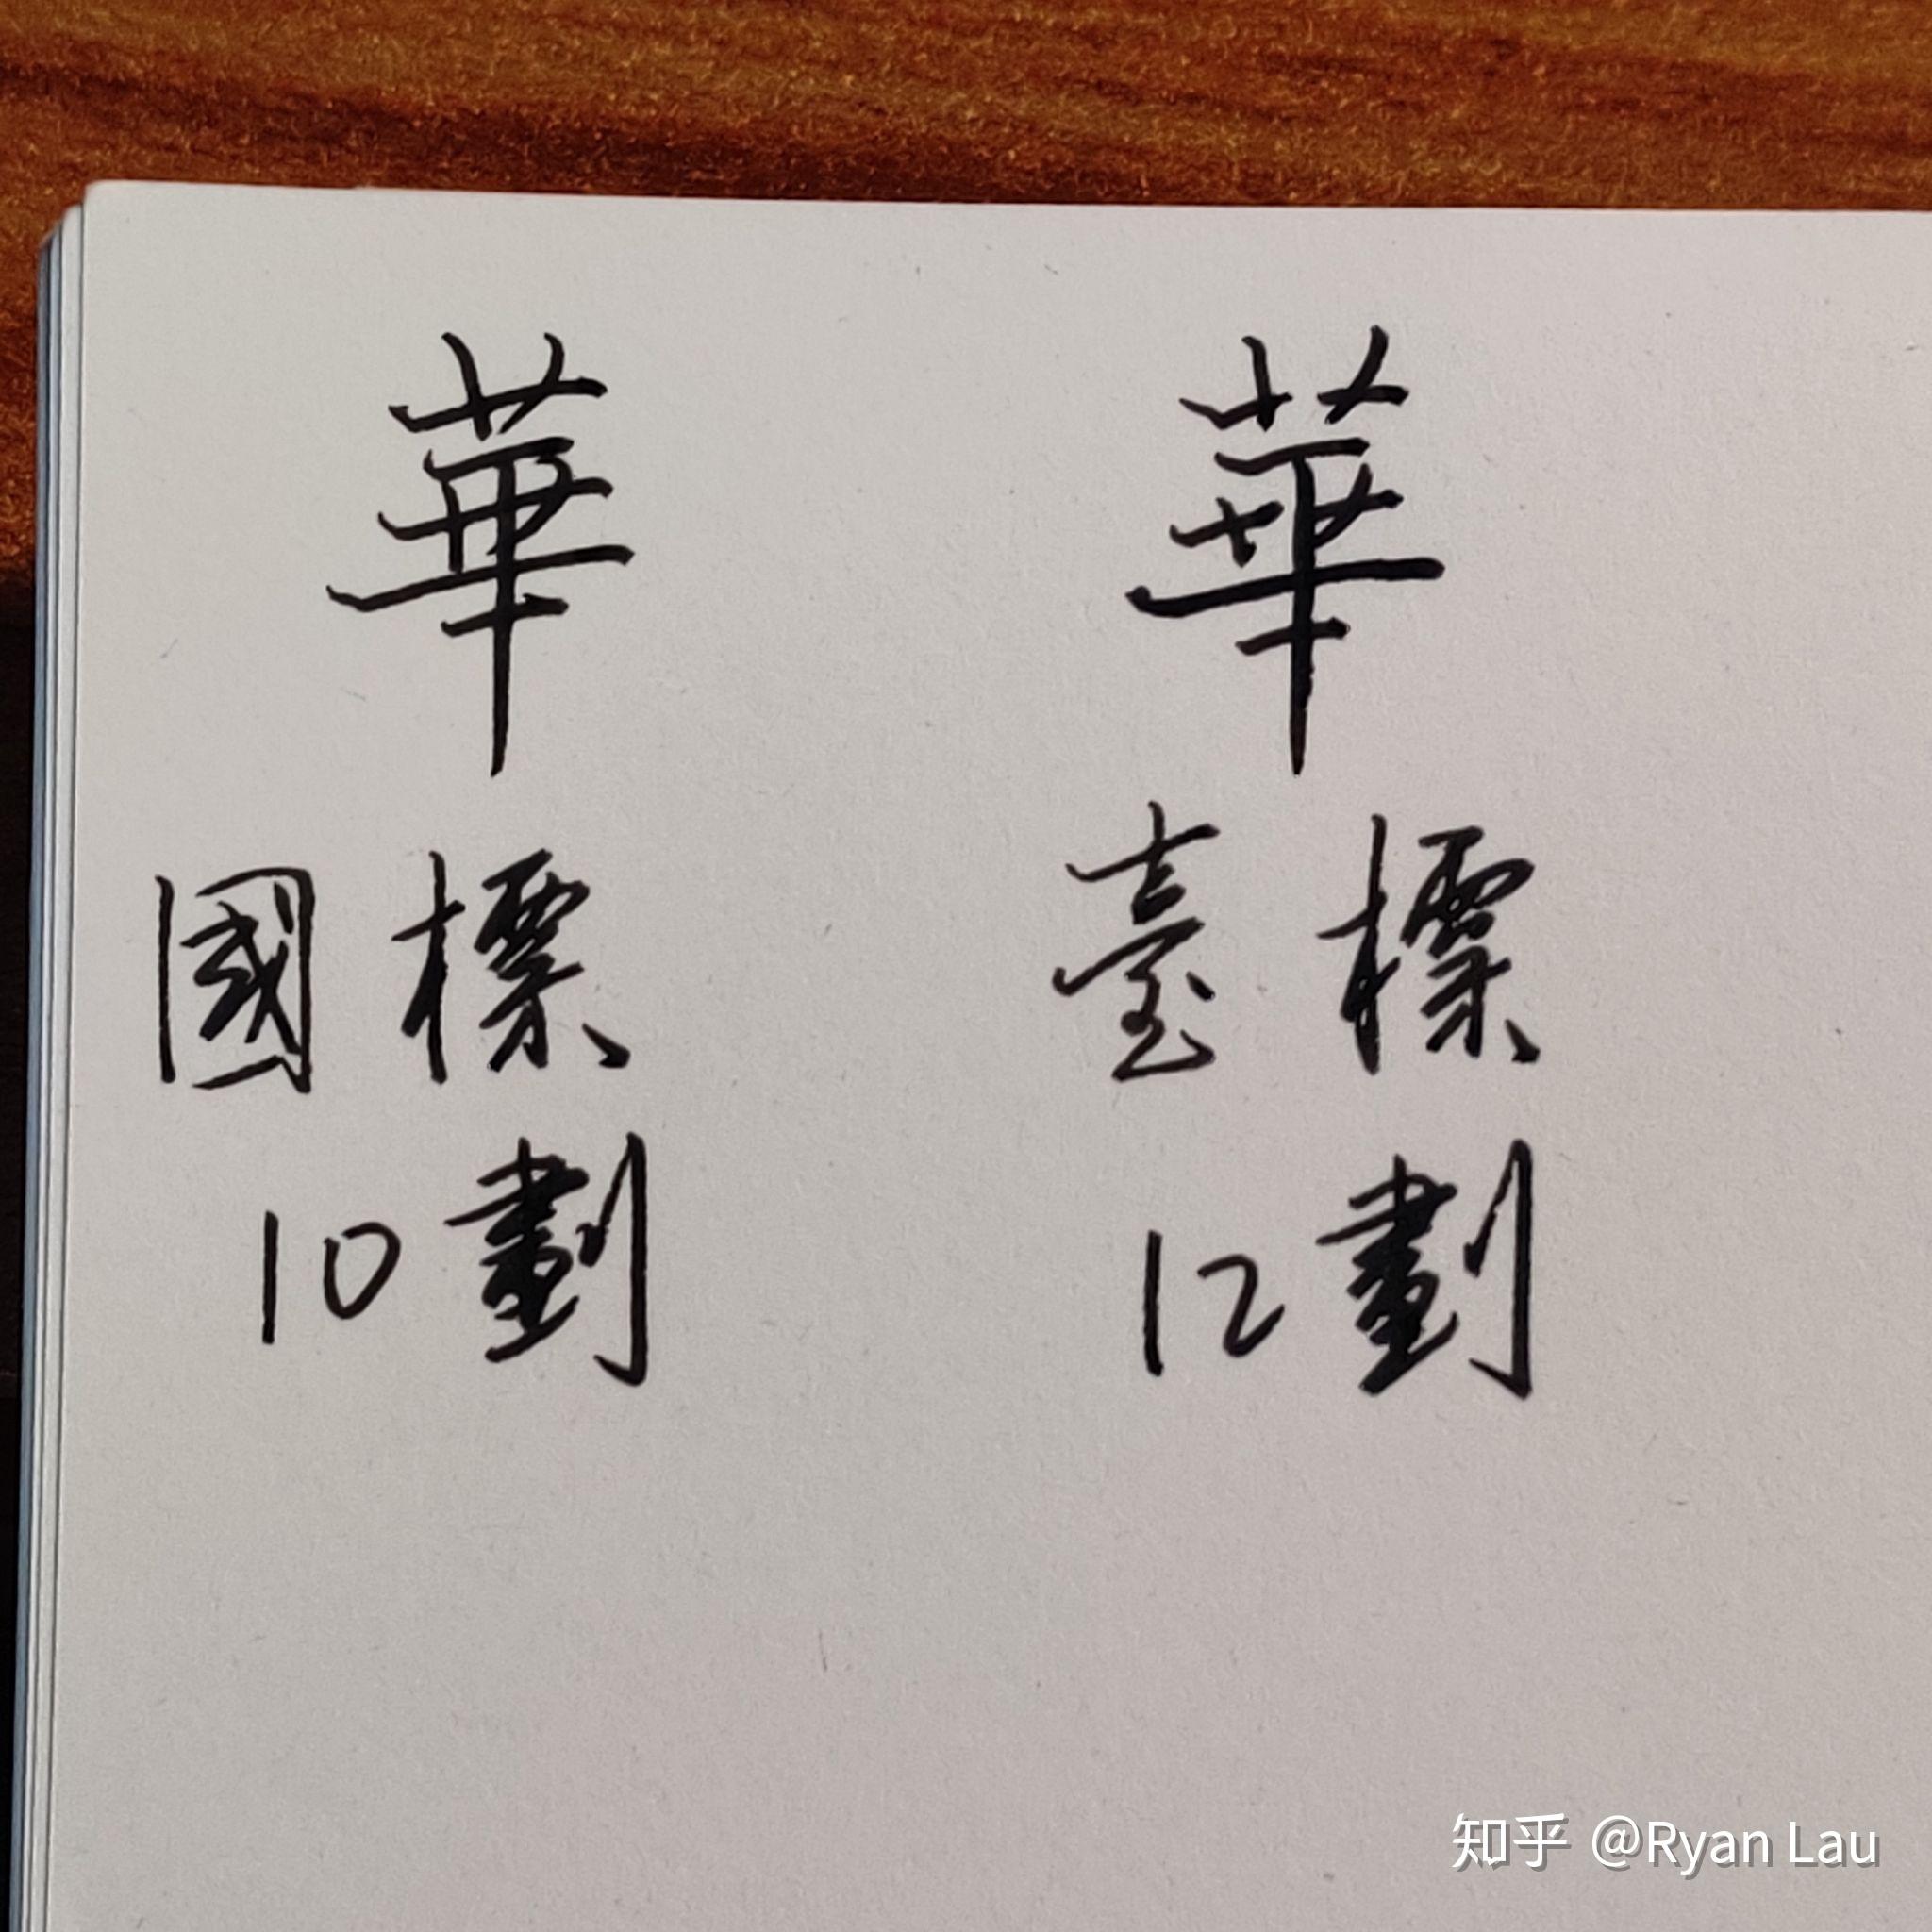 华的繁体字是几画的?